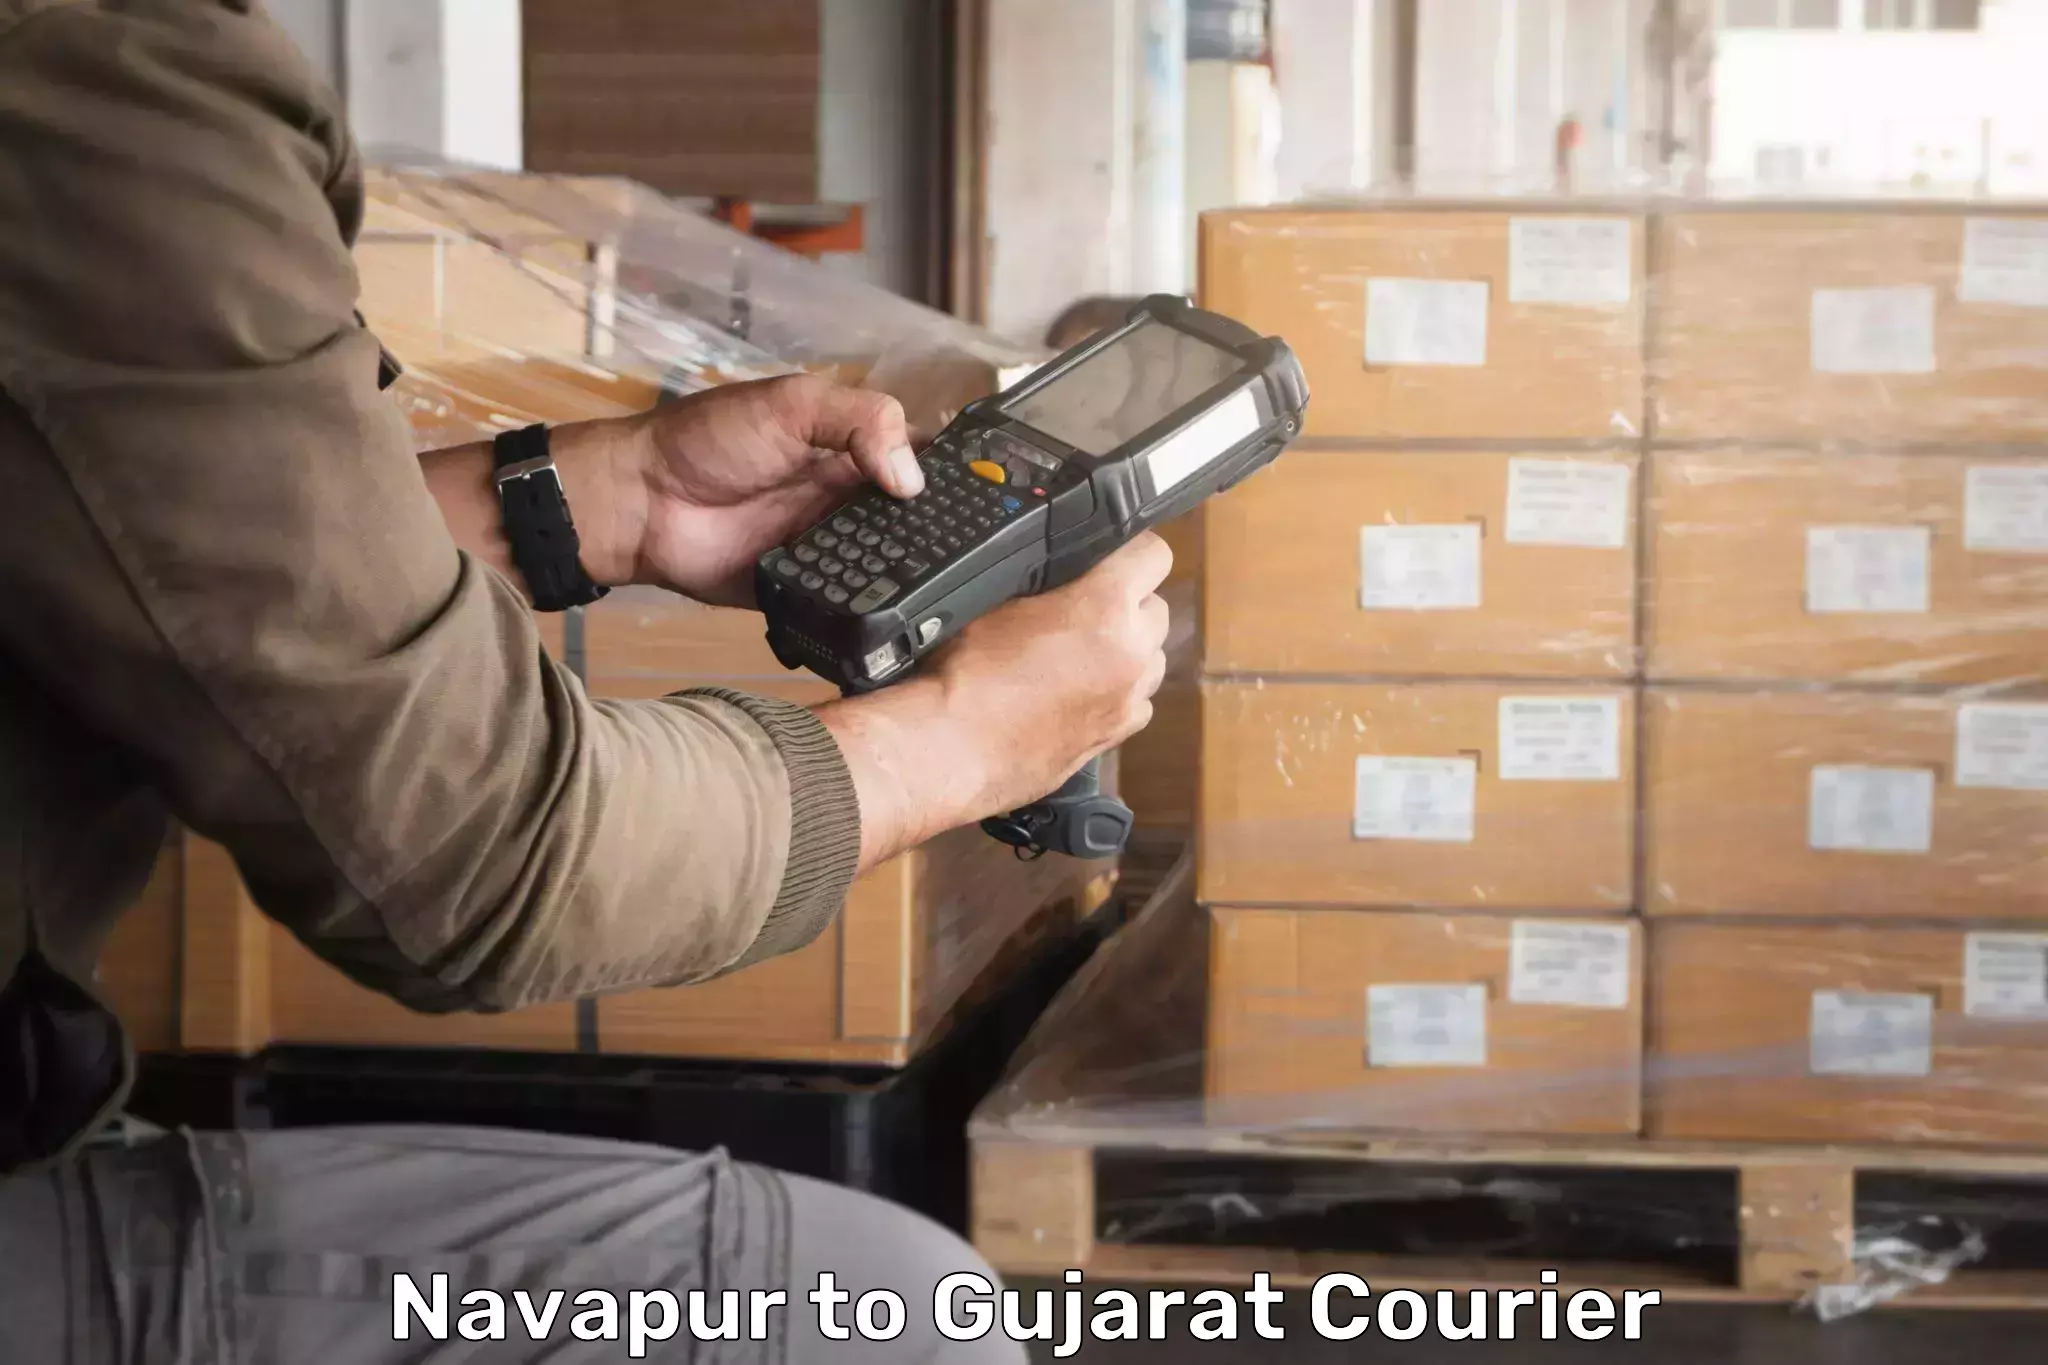 Reliable courier services in Navapur to Kadodara